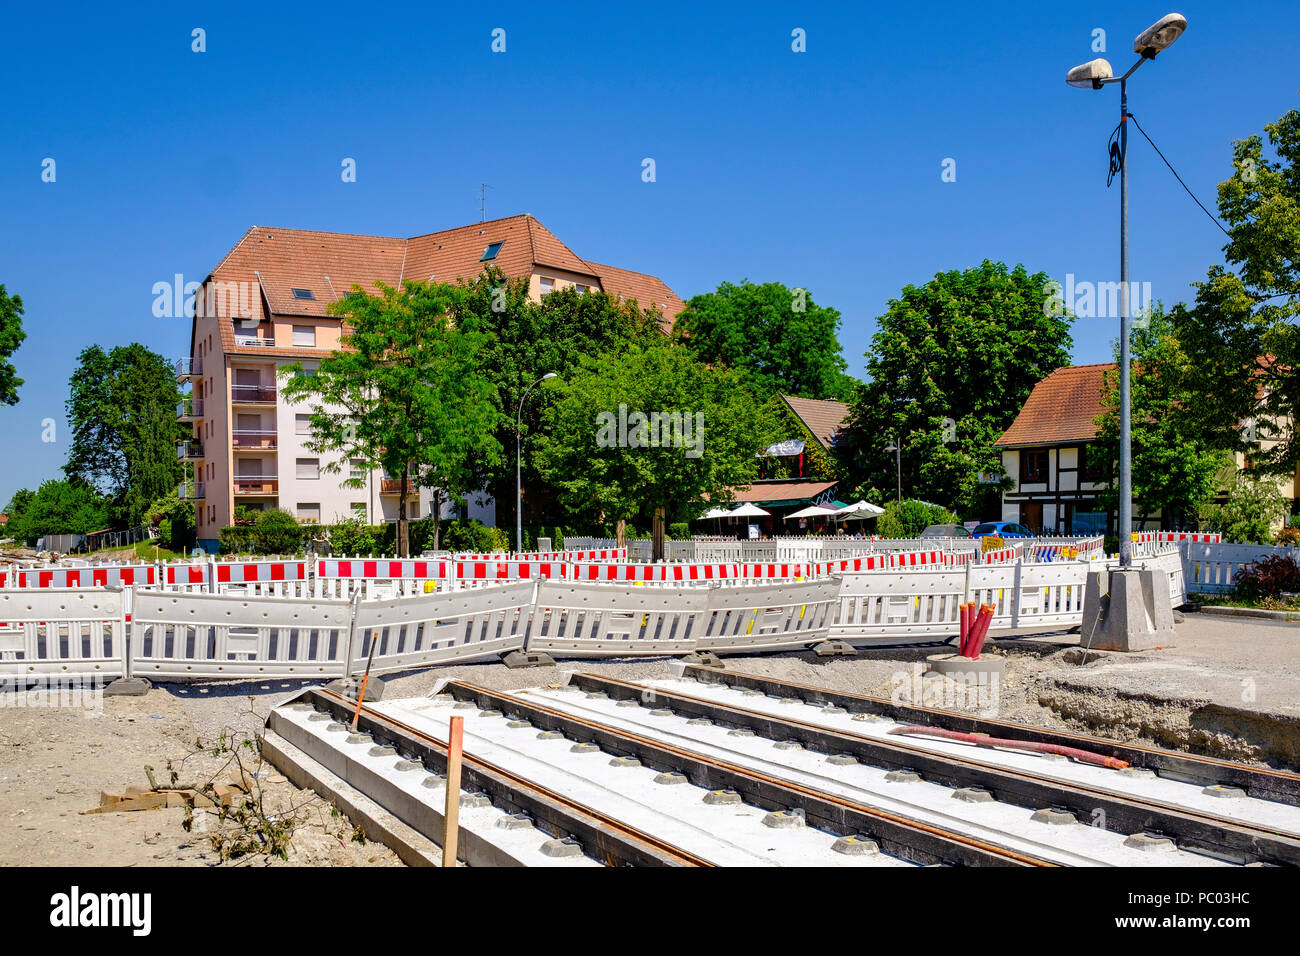 Strasburgo, tram sito in costruzione, binari ferroviari, calcestruzzo letto, sicurezza barriere in plastica, case, linea e estensione, Alsazia, Francia, Europa Foto Stock